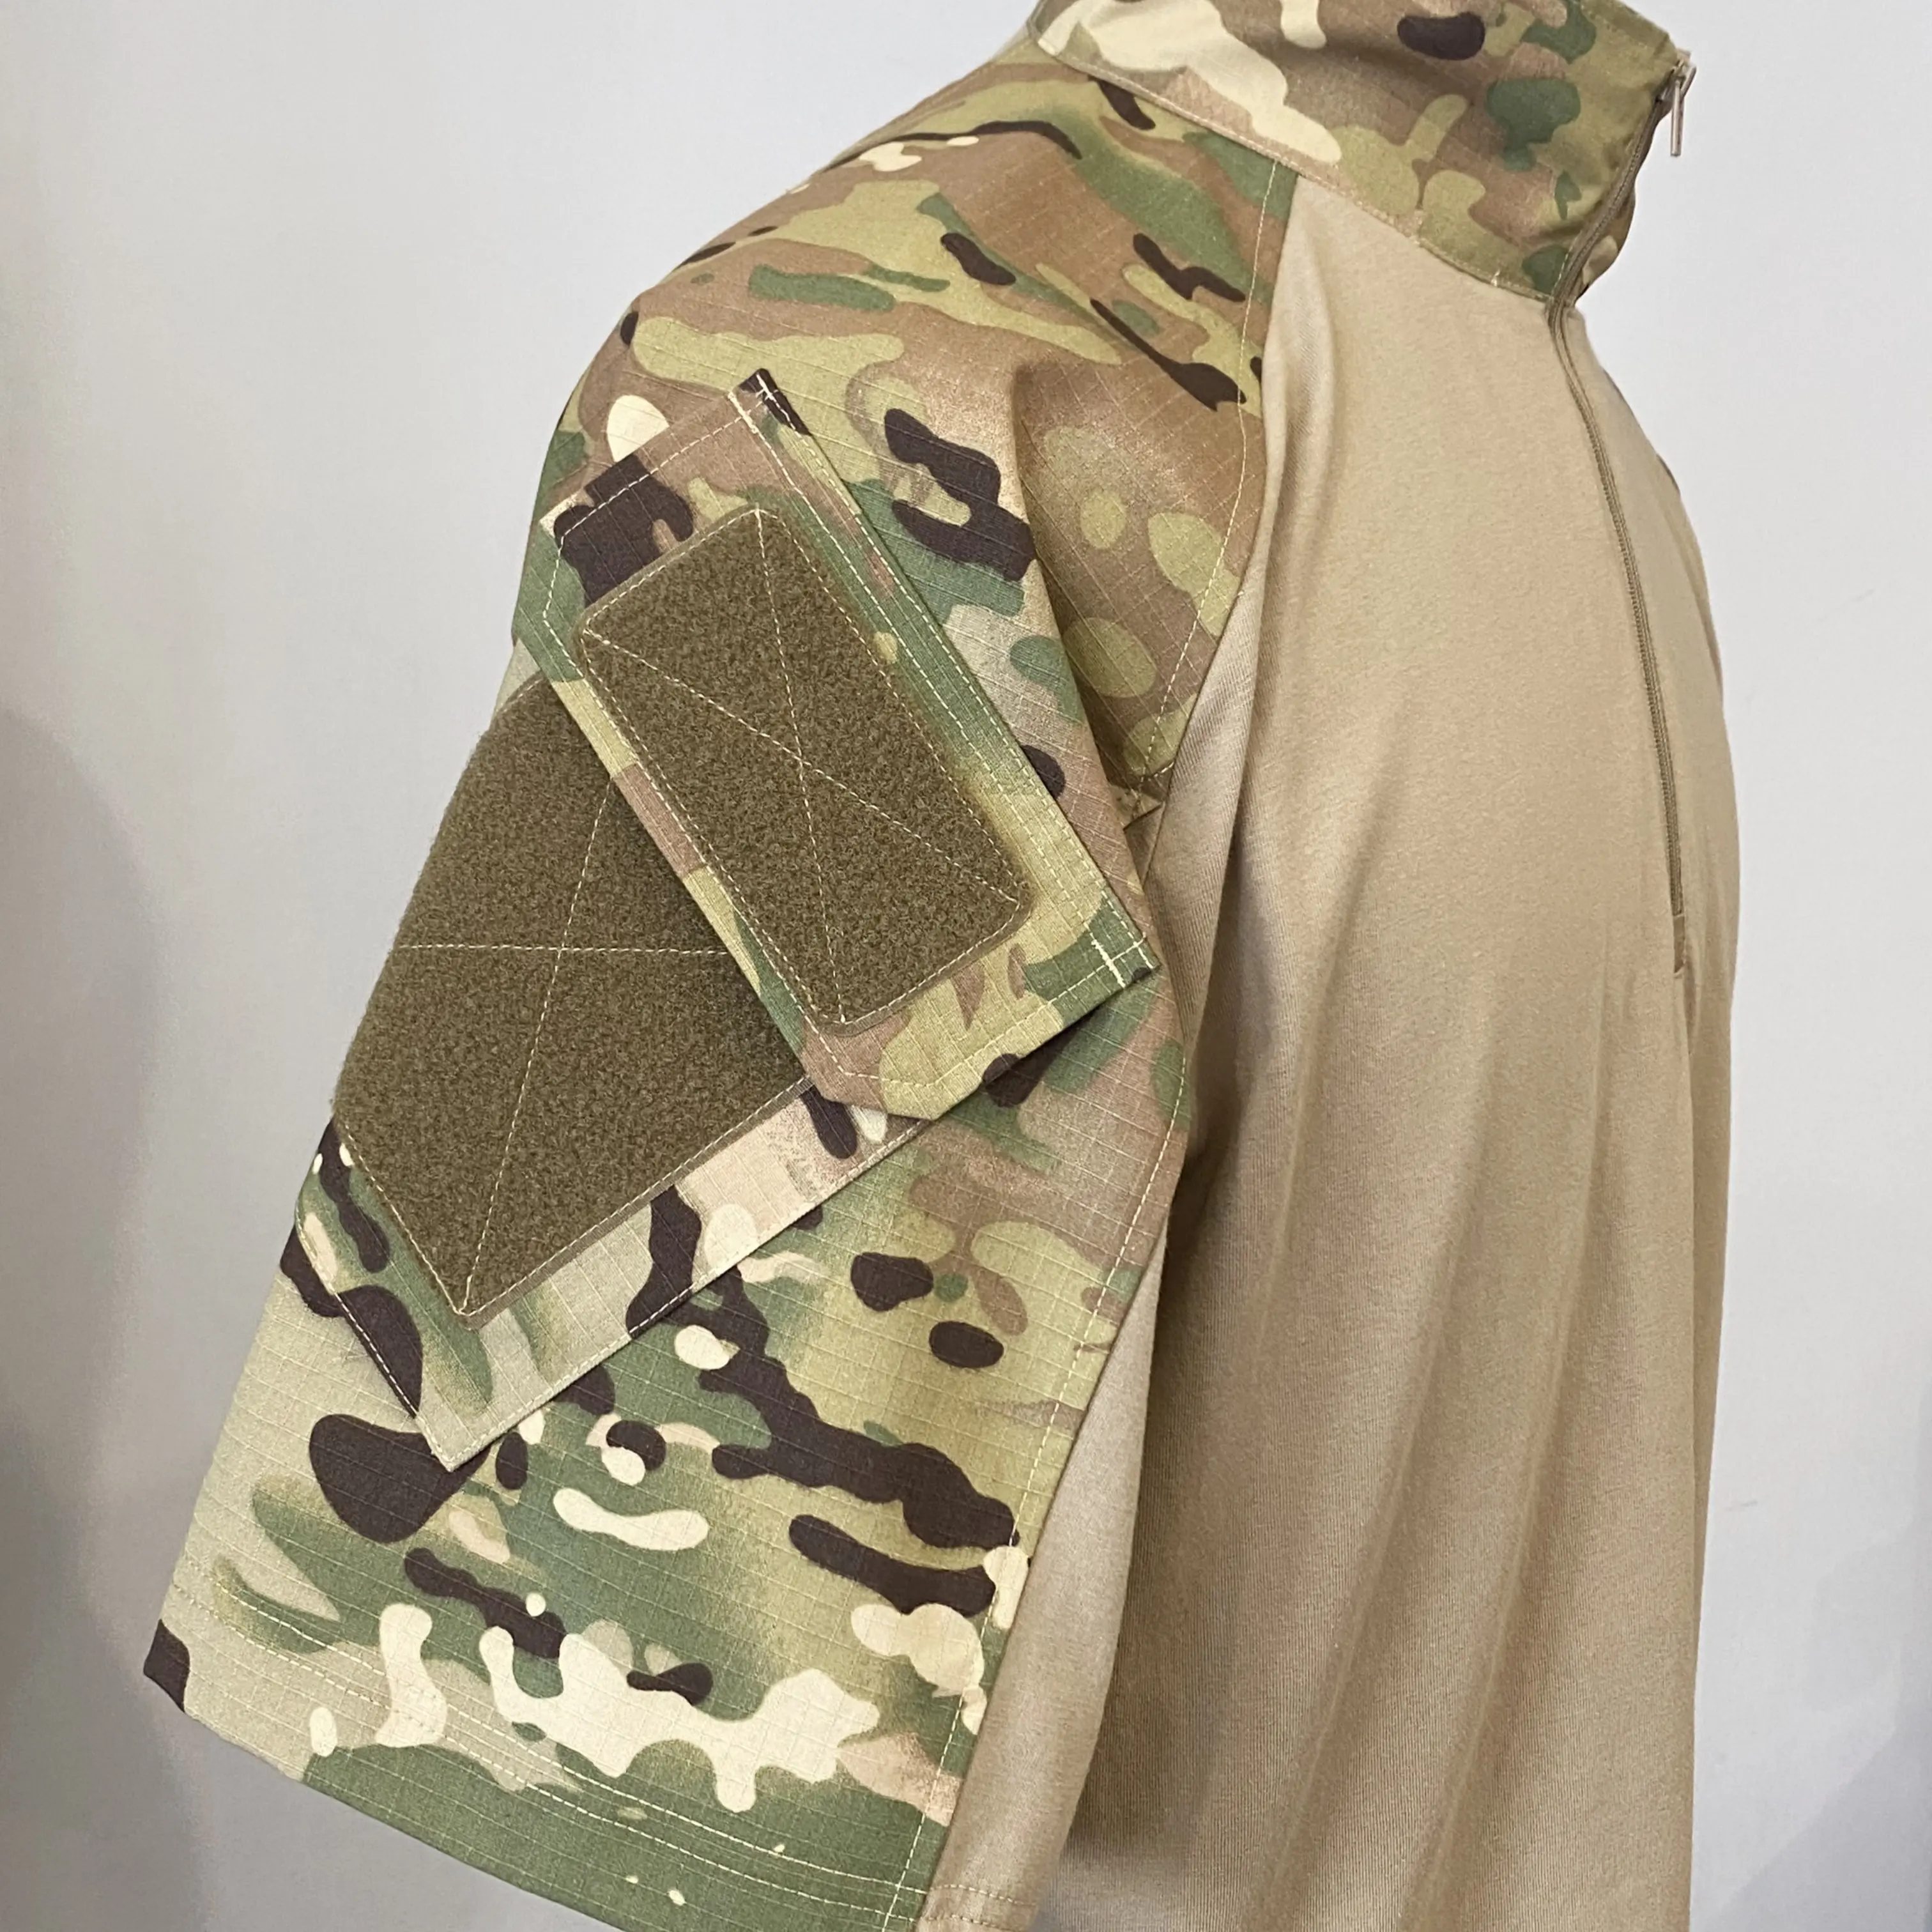 하이 퀄리티 남성 통기성 위장 반소매 셔츠 개구리 전투복